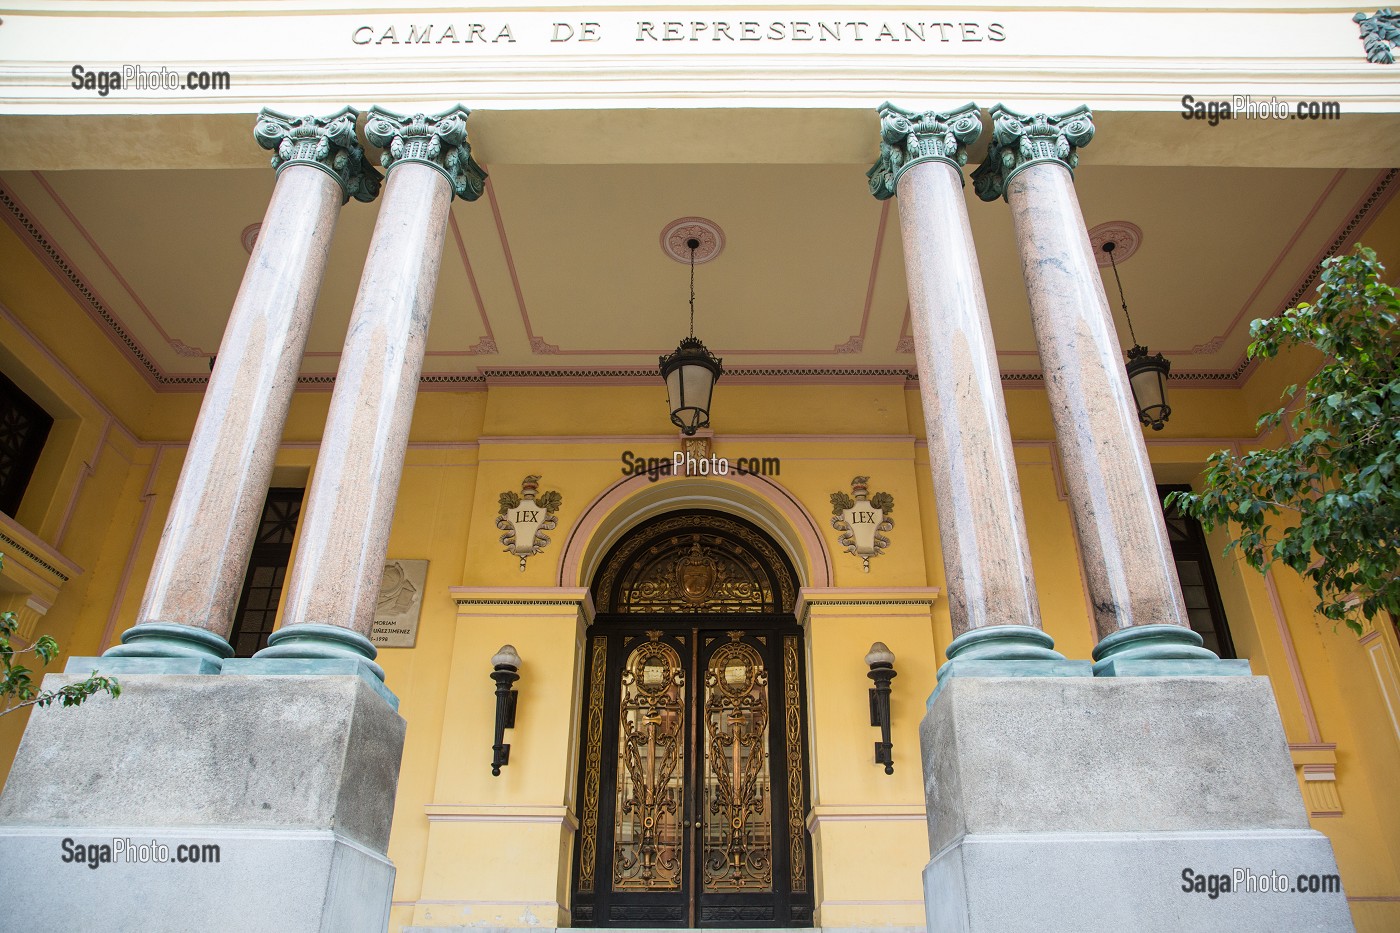 CAMARA DE REPRESENTANTES (CHAMBRE DES REPRESENTANTS), CALLE DE LOS OFICIOS, LA HAVANE, CUBA, CARAIBES 